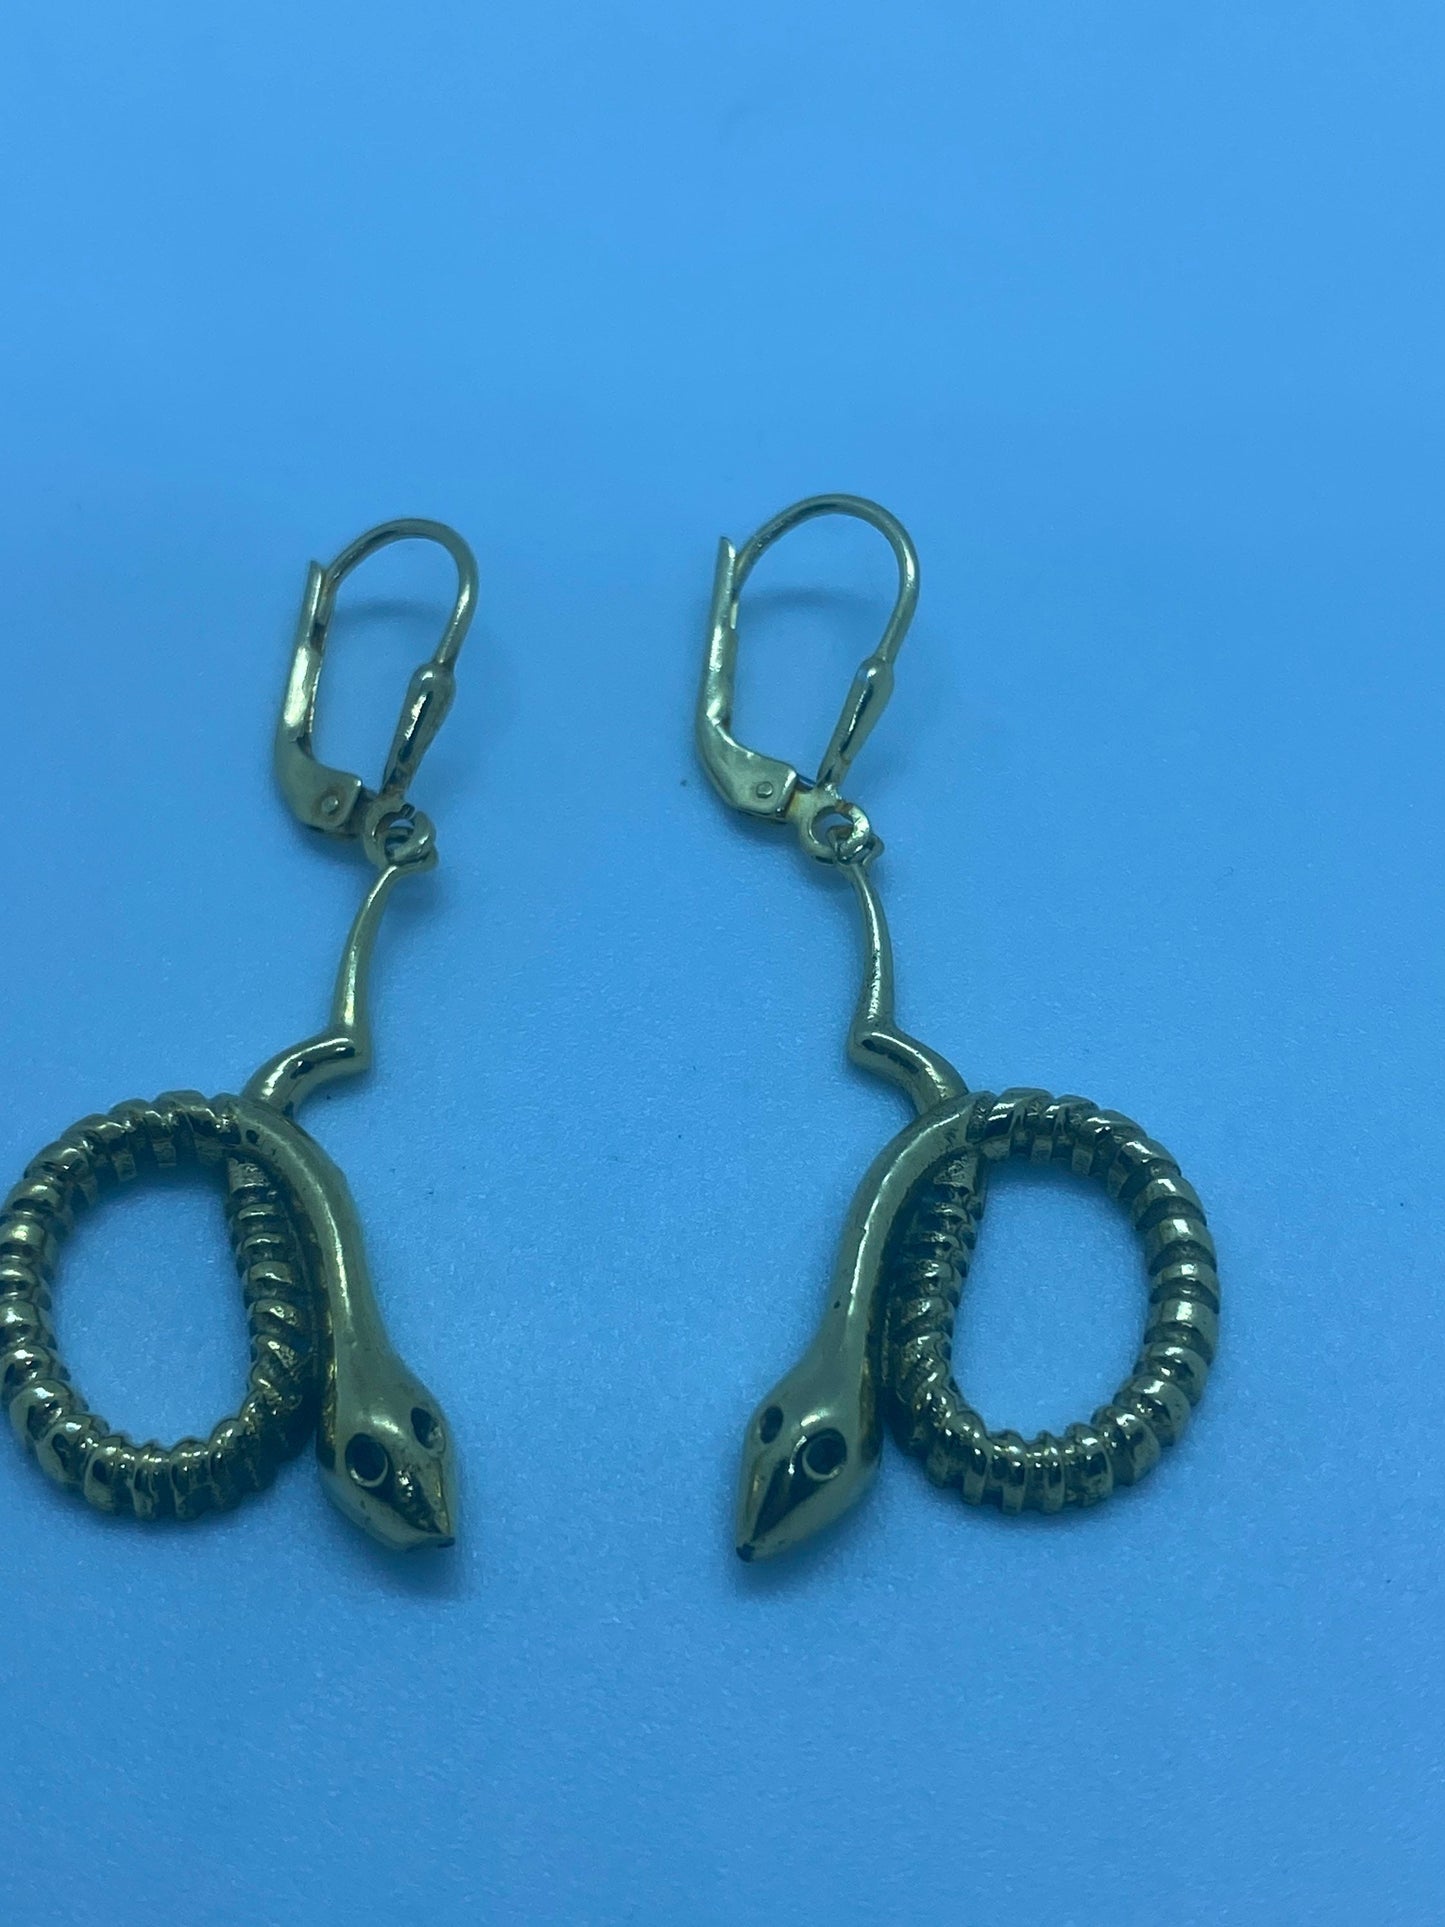 Vintage Golden Bronze Snake Earrings